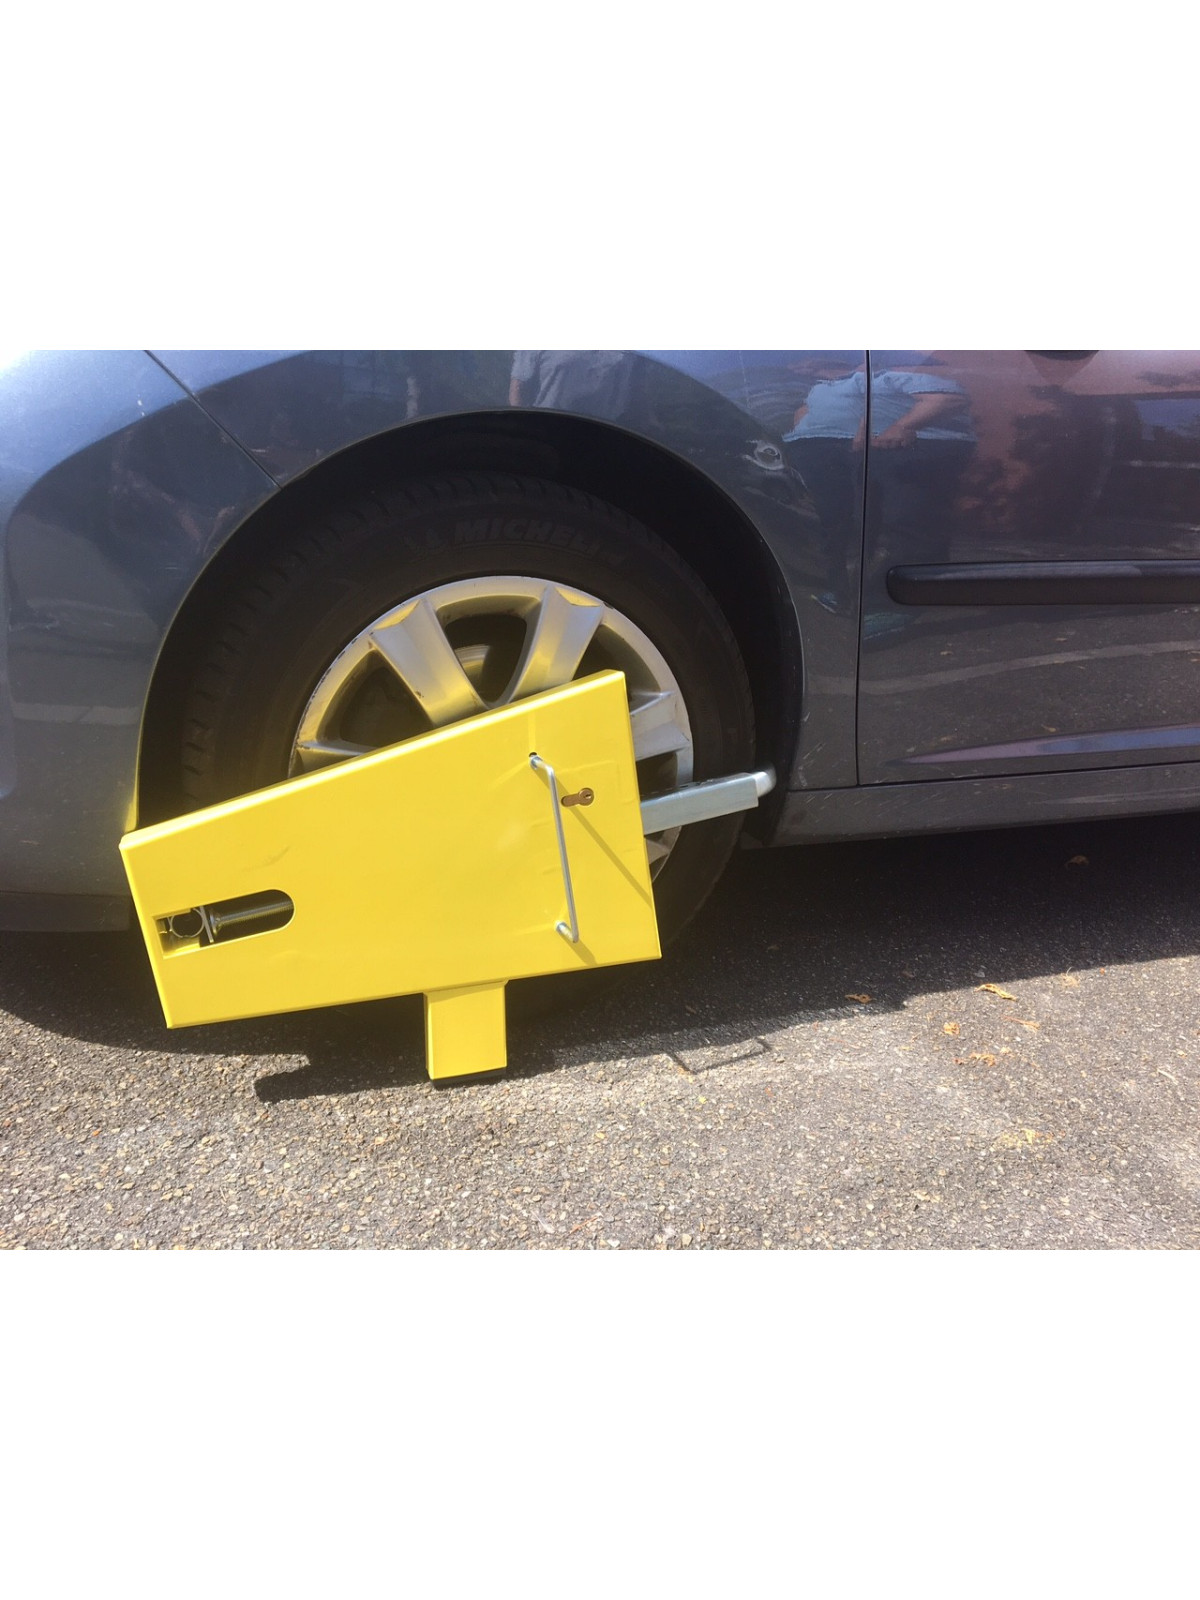 Antivol bloque-roue pour voiture - Aménagement parking